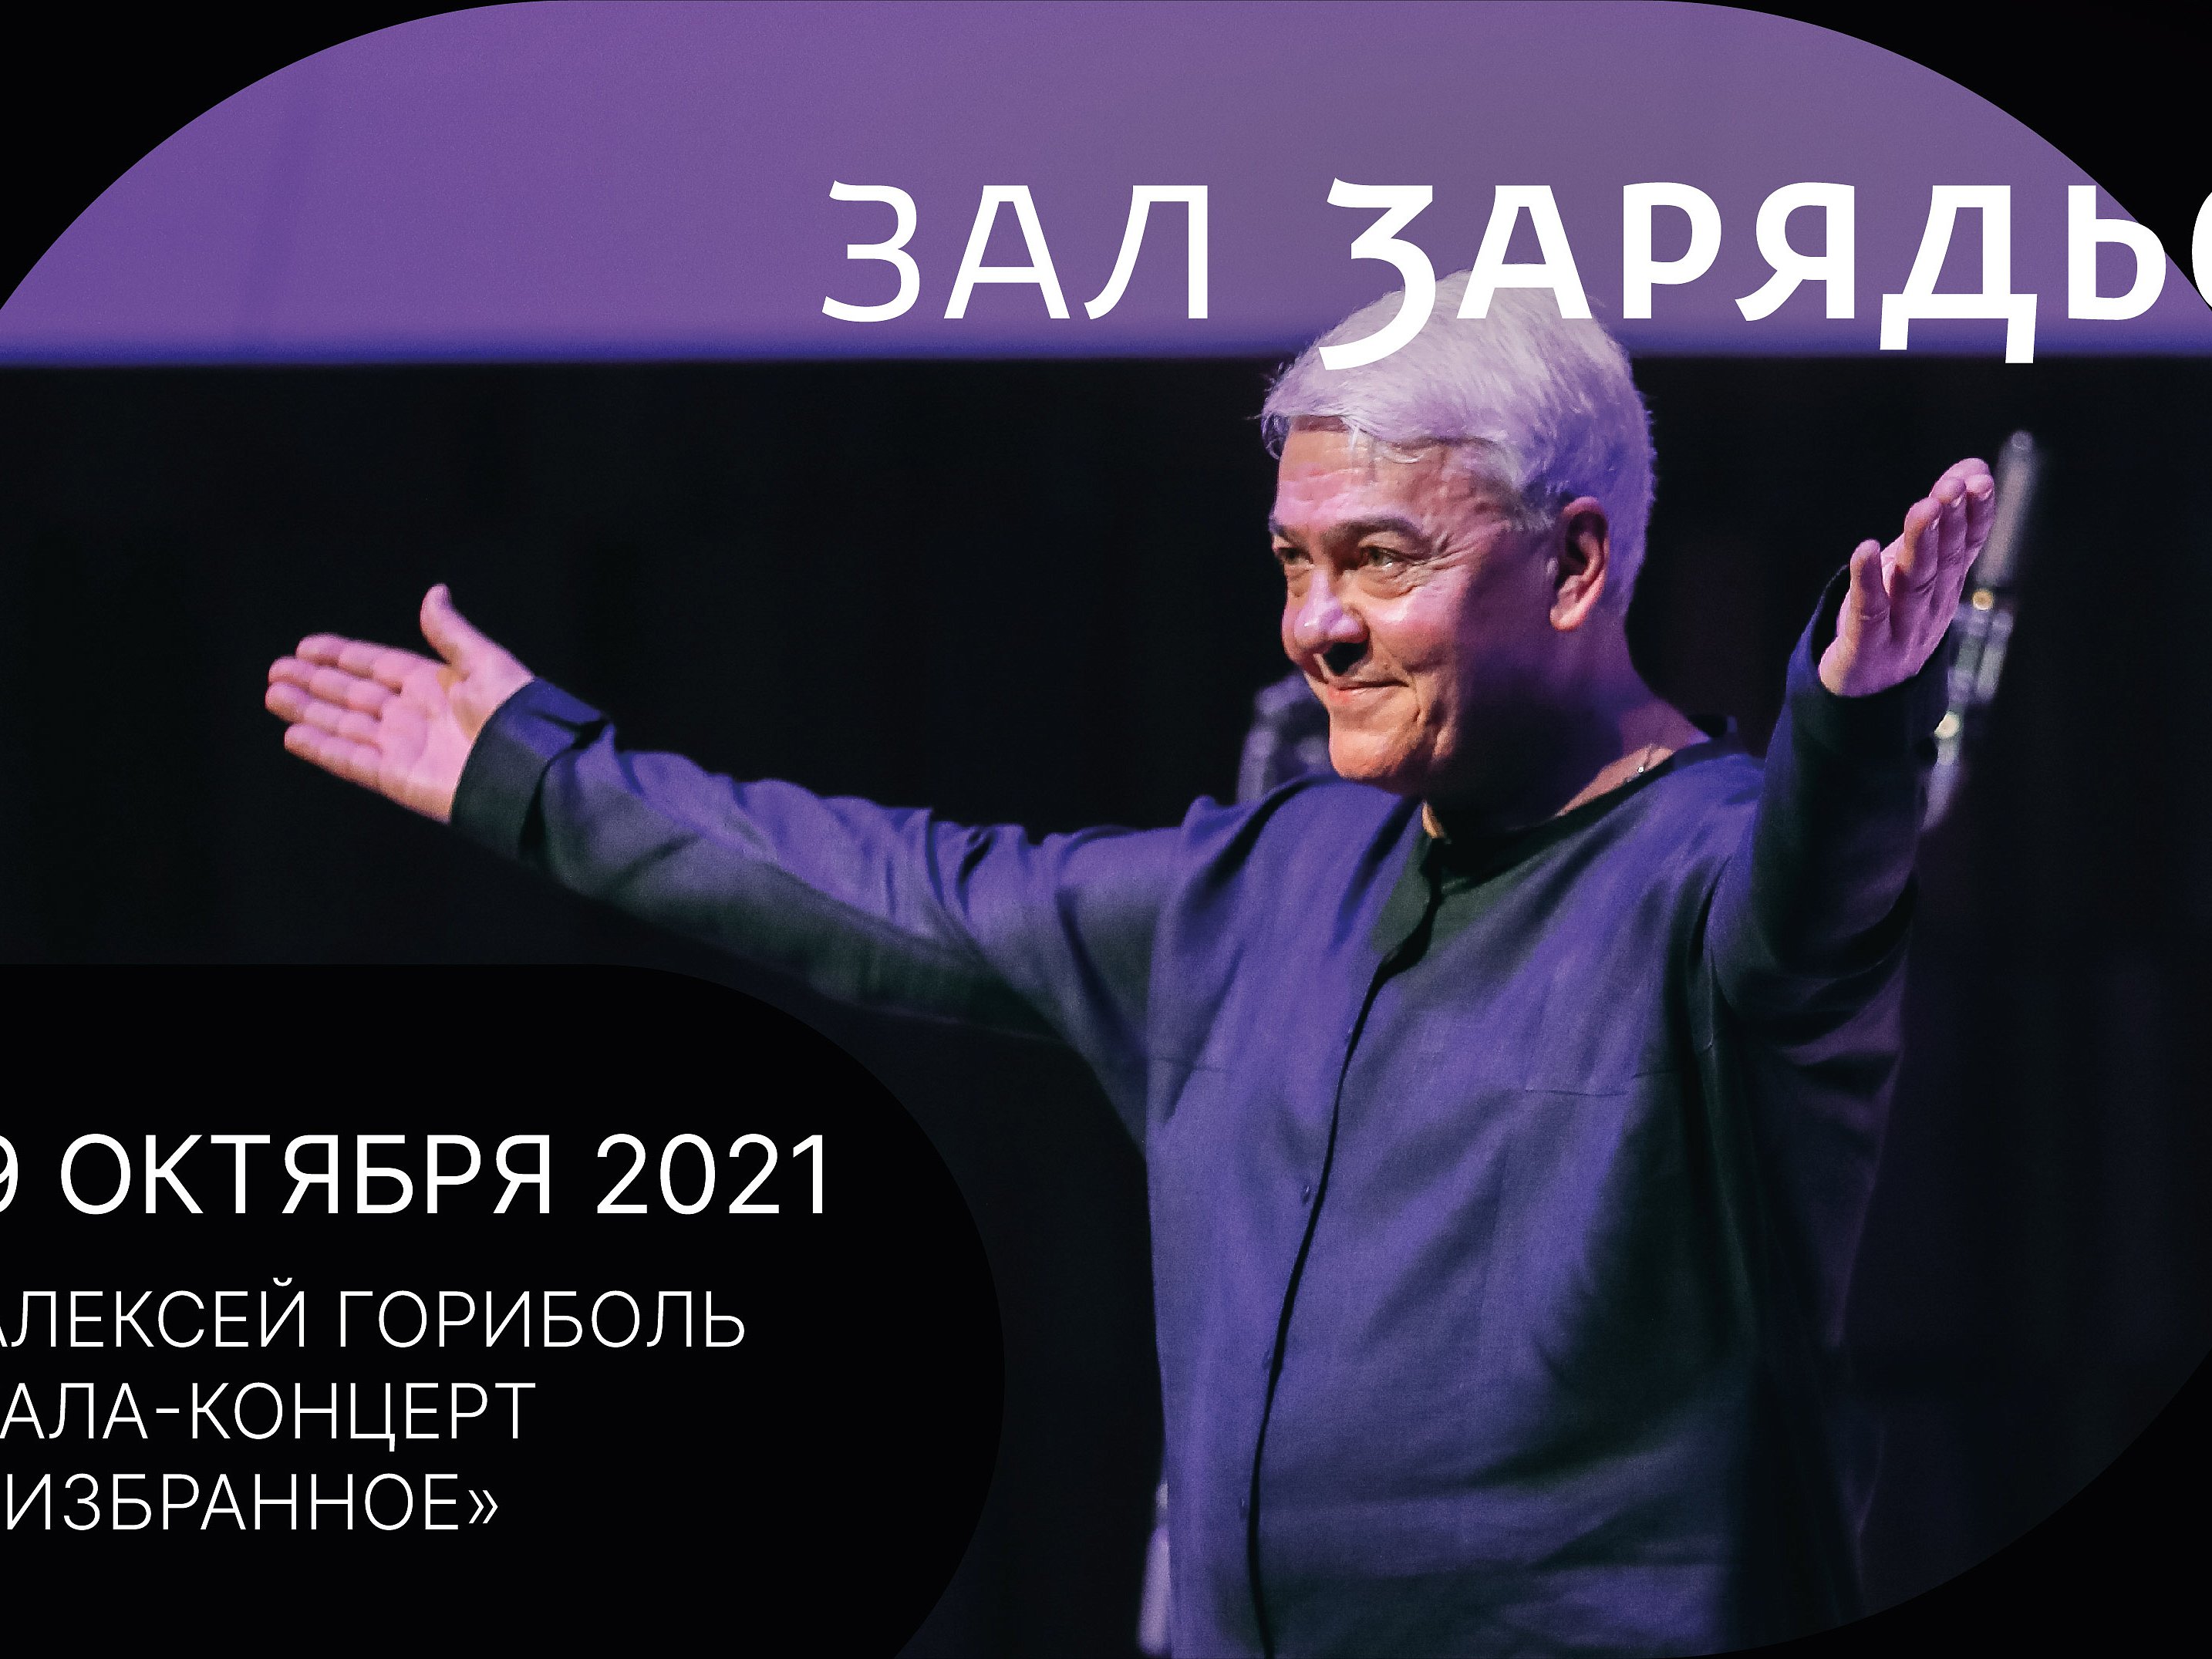 Гала-концерт Алексея Гориболя «Избранное»